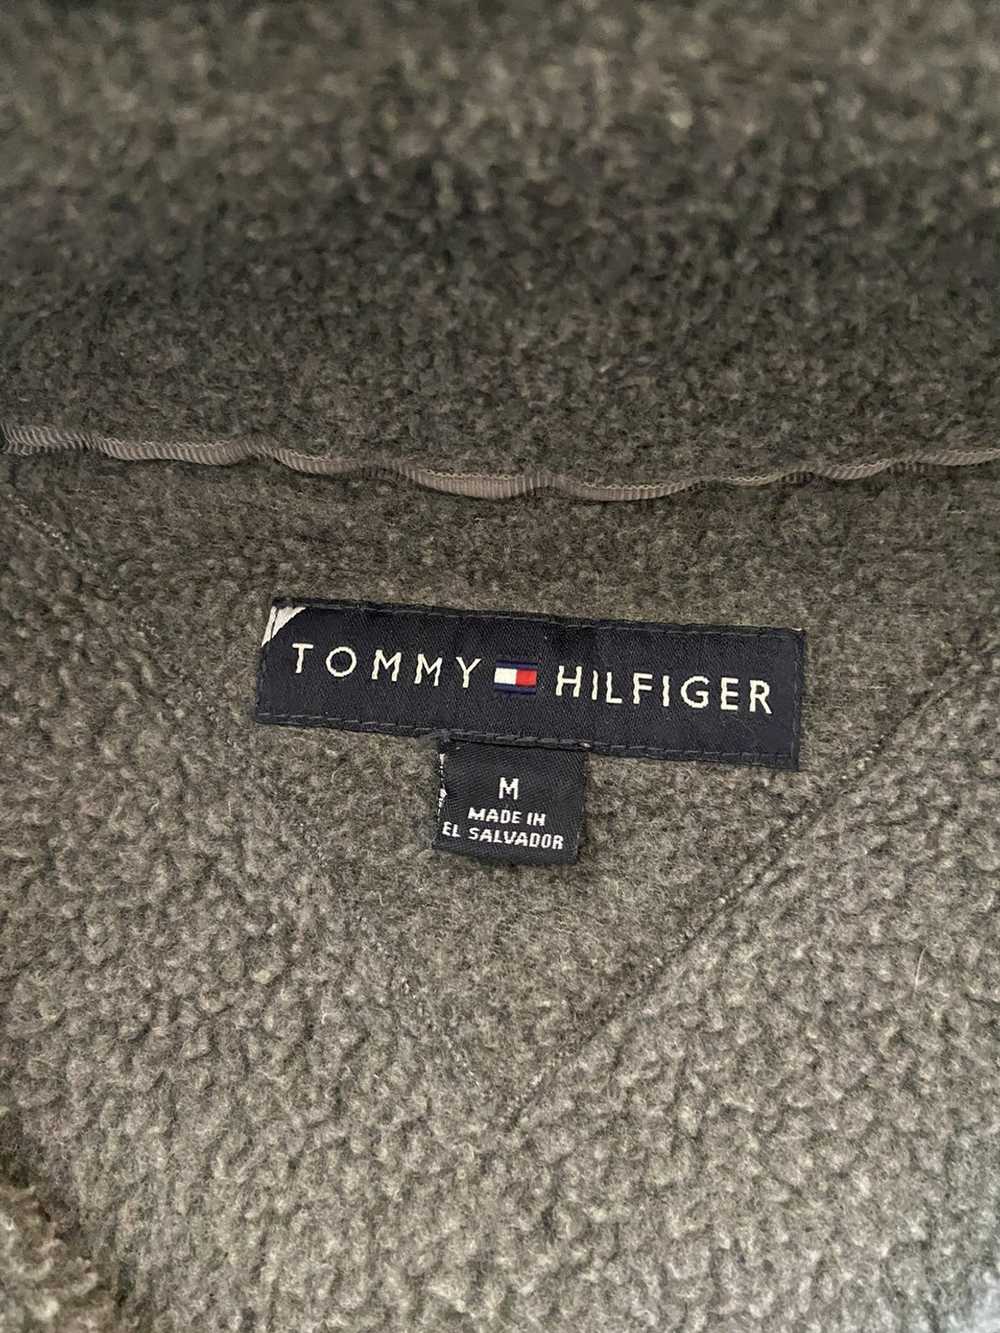 Tommy Hilfiger Tommy Hilfiger Fleece - image 3